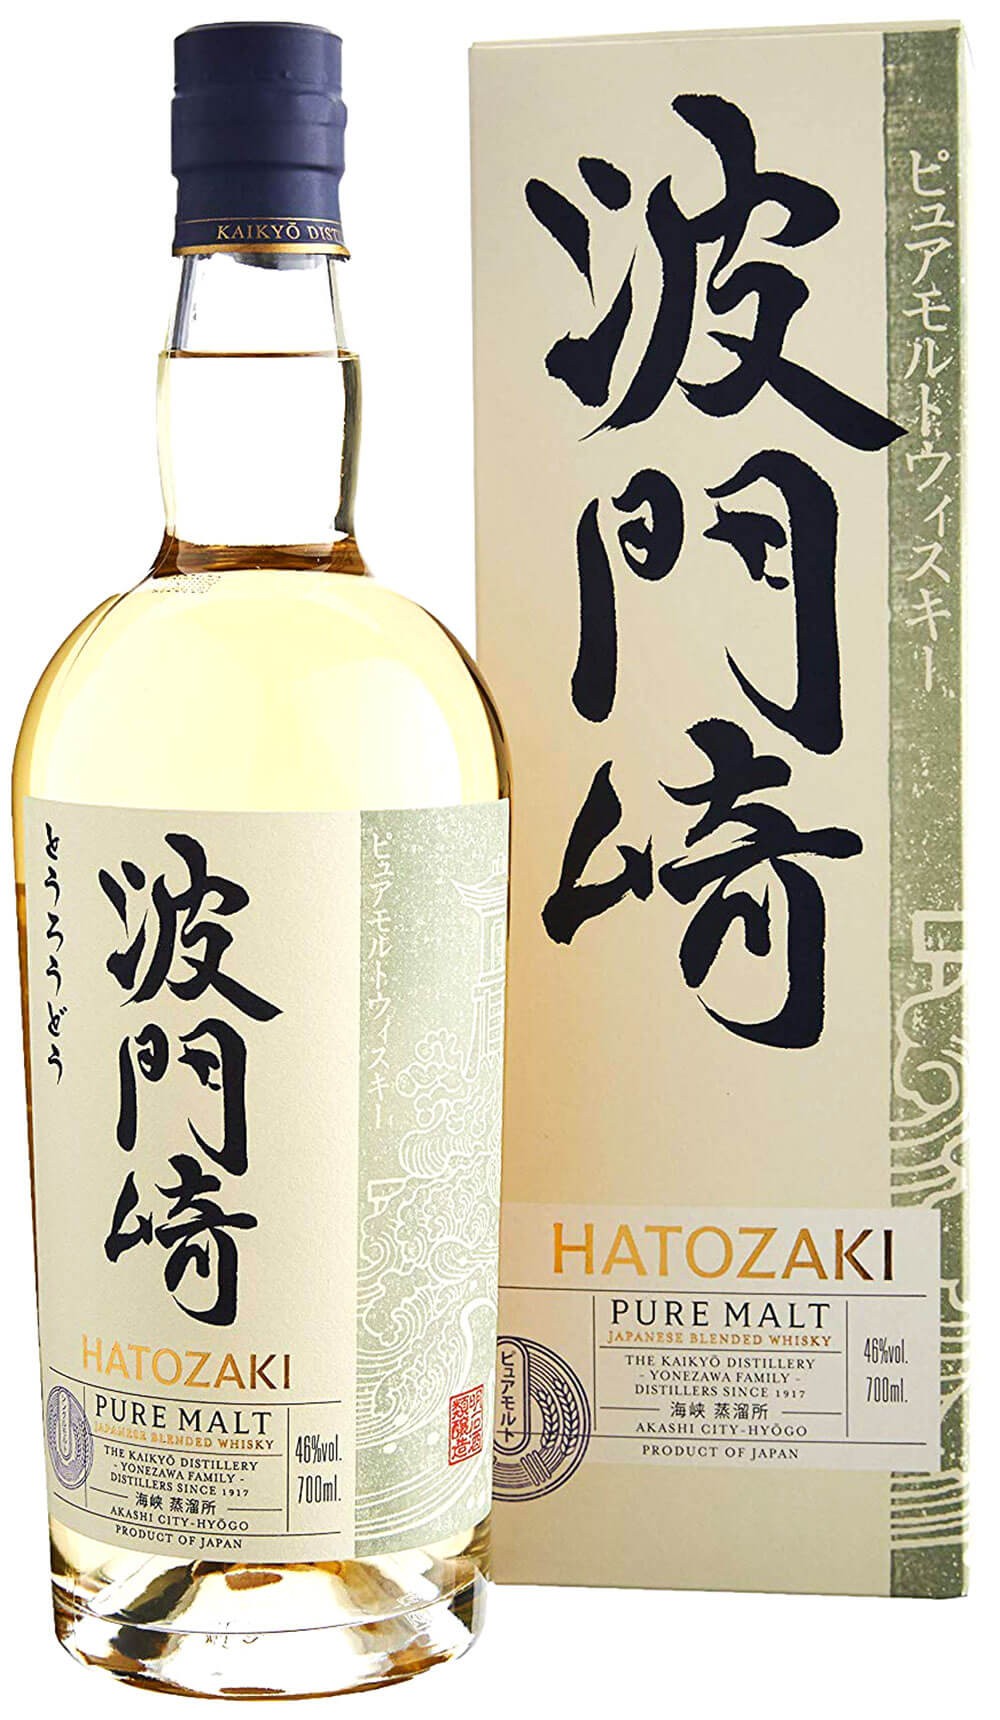 whisky kaikyo hatozaki case malt with cl.70